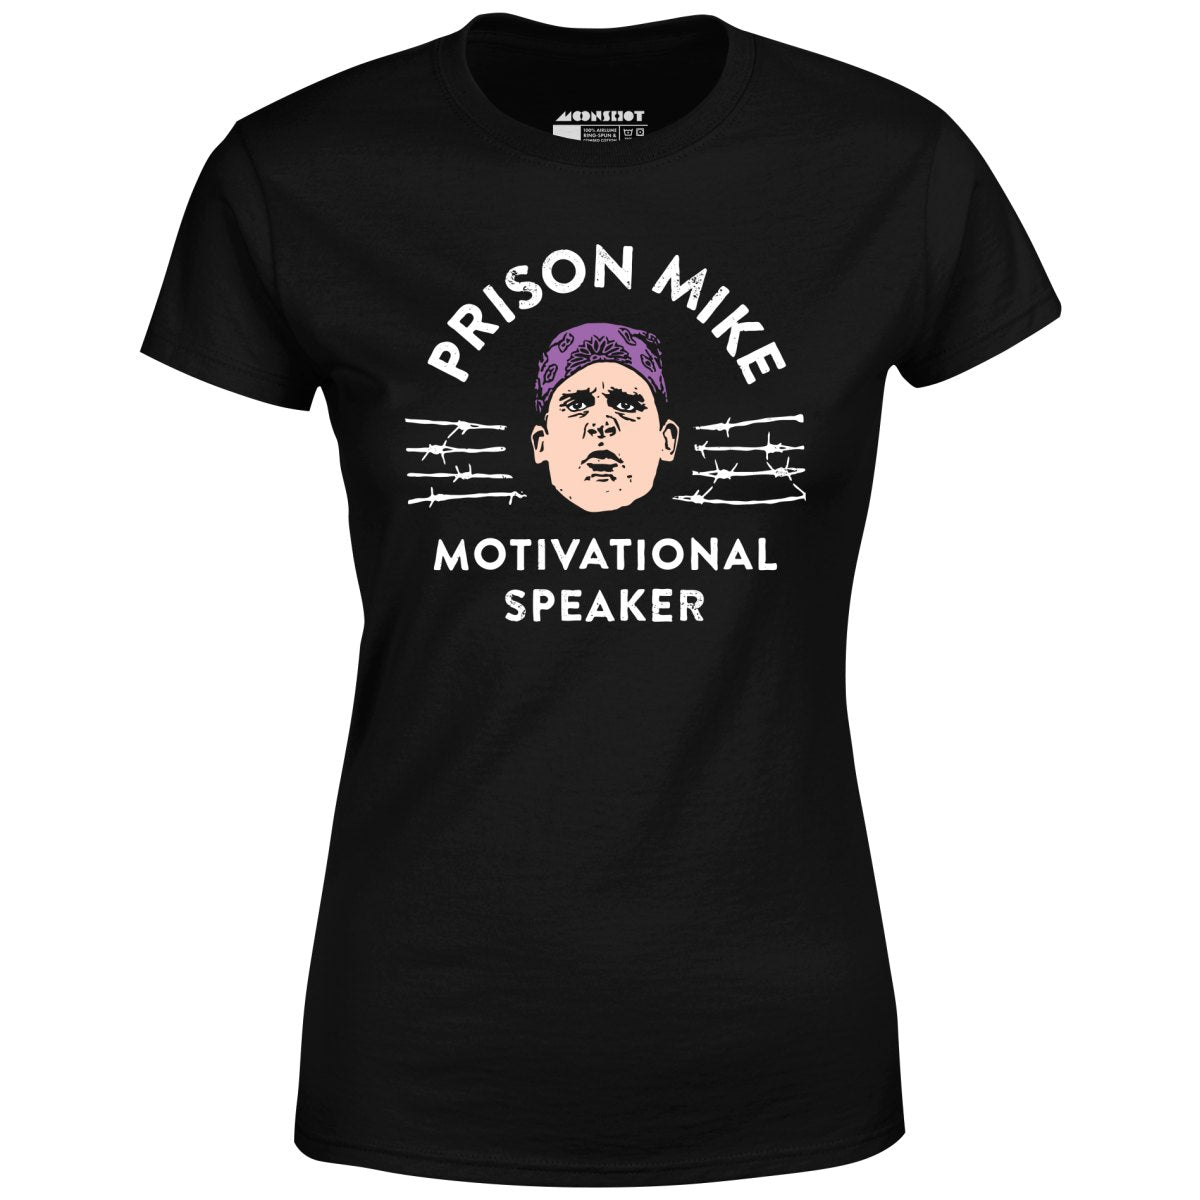 Prison Mike - Motivational Speaker - Women's T-Shirt